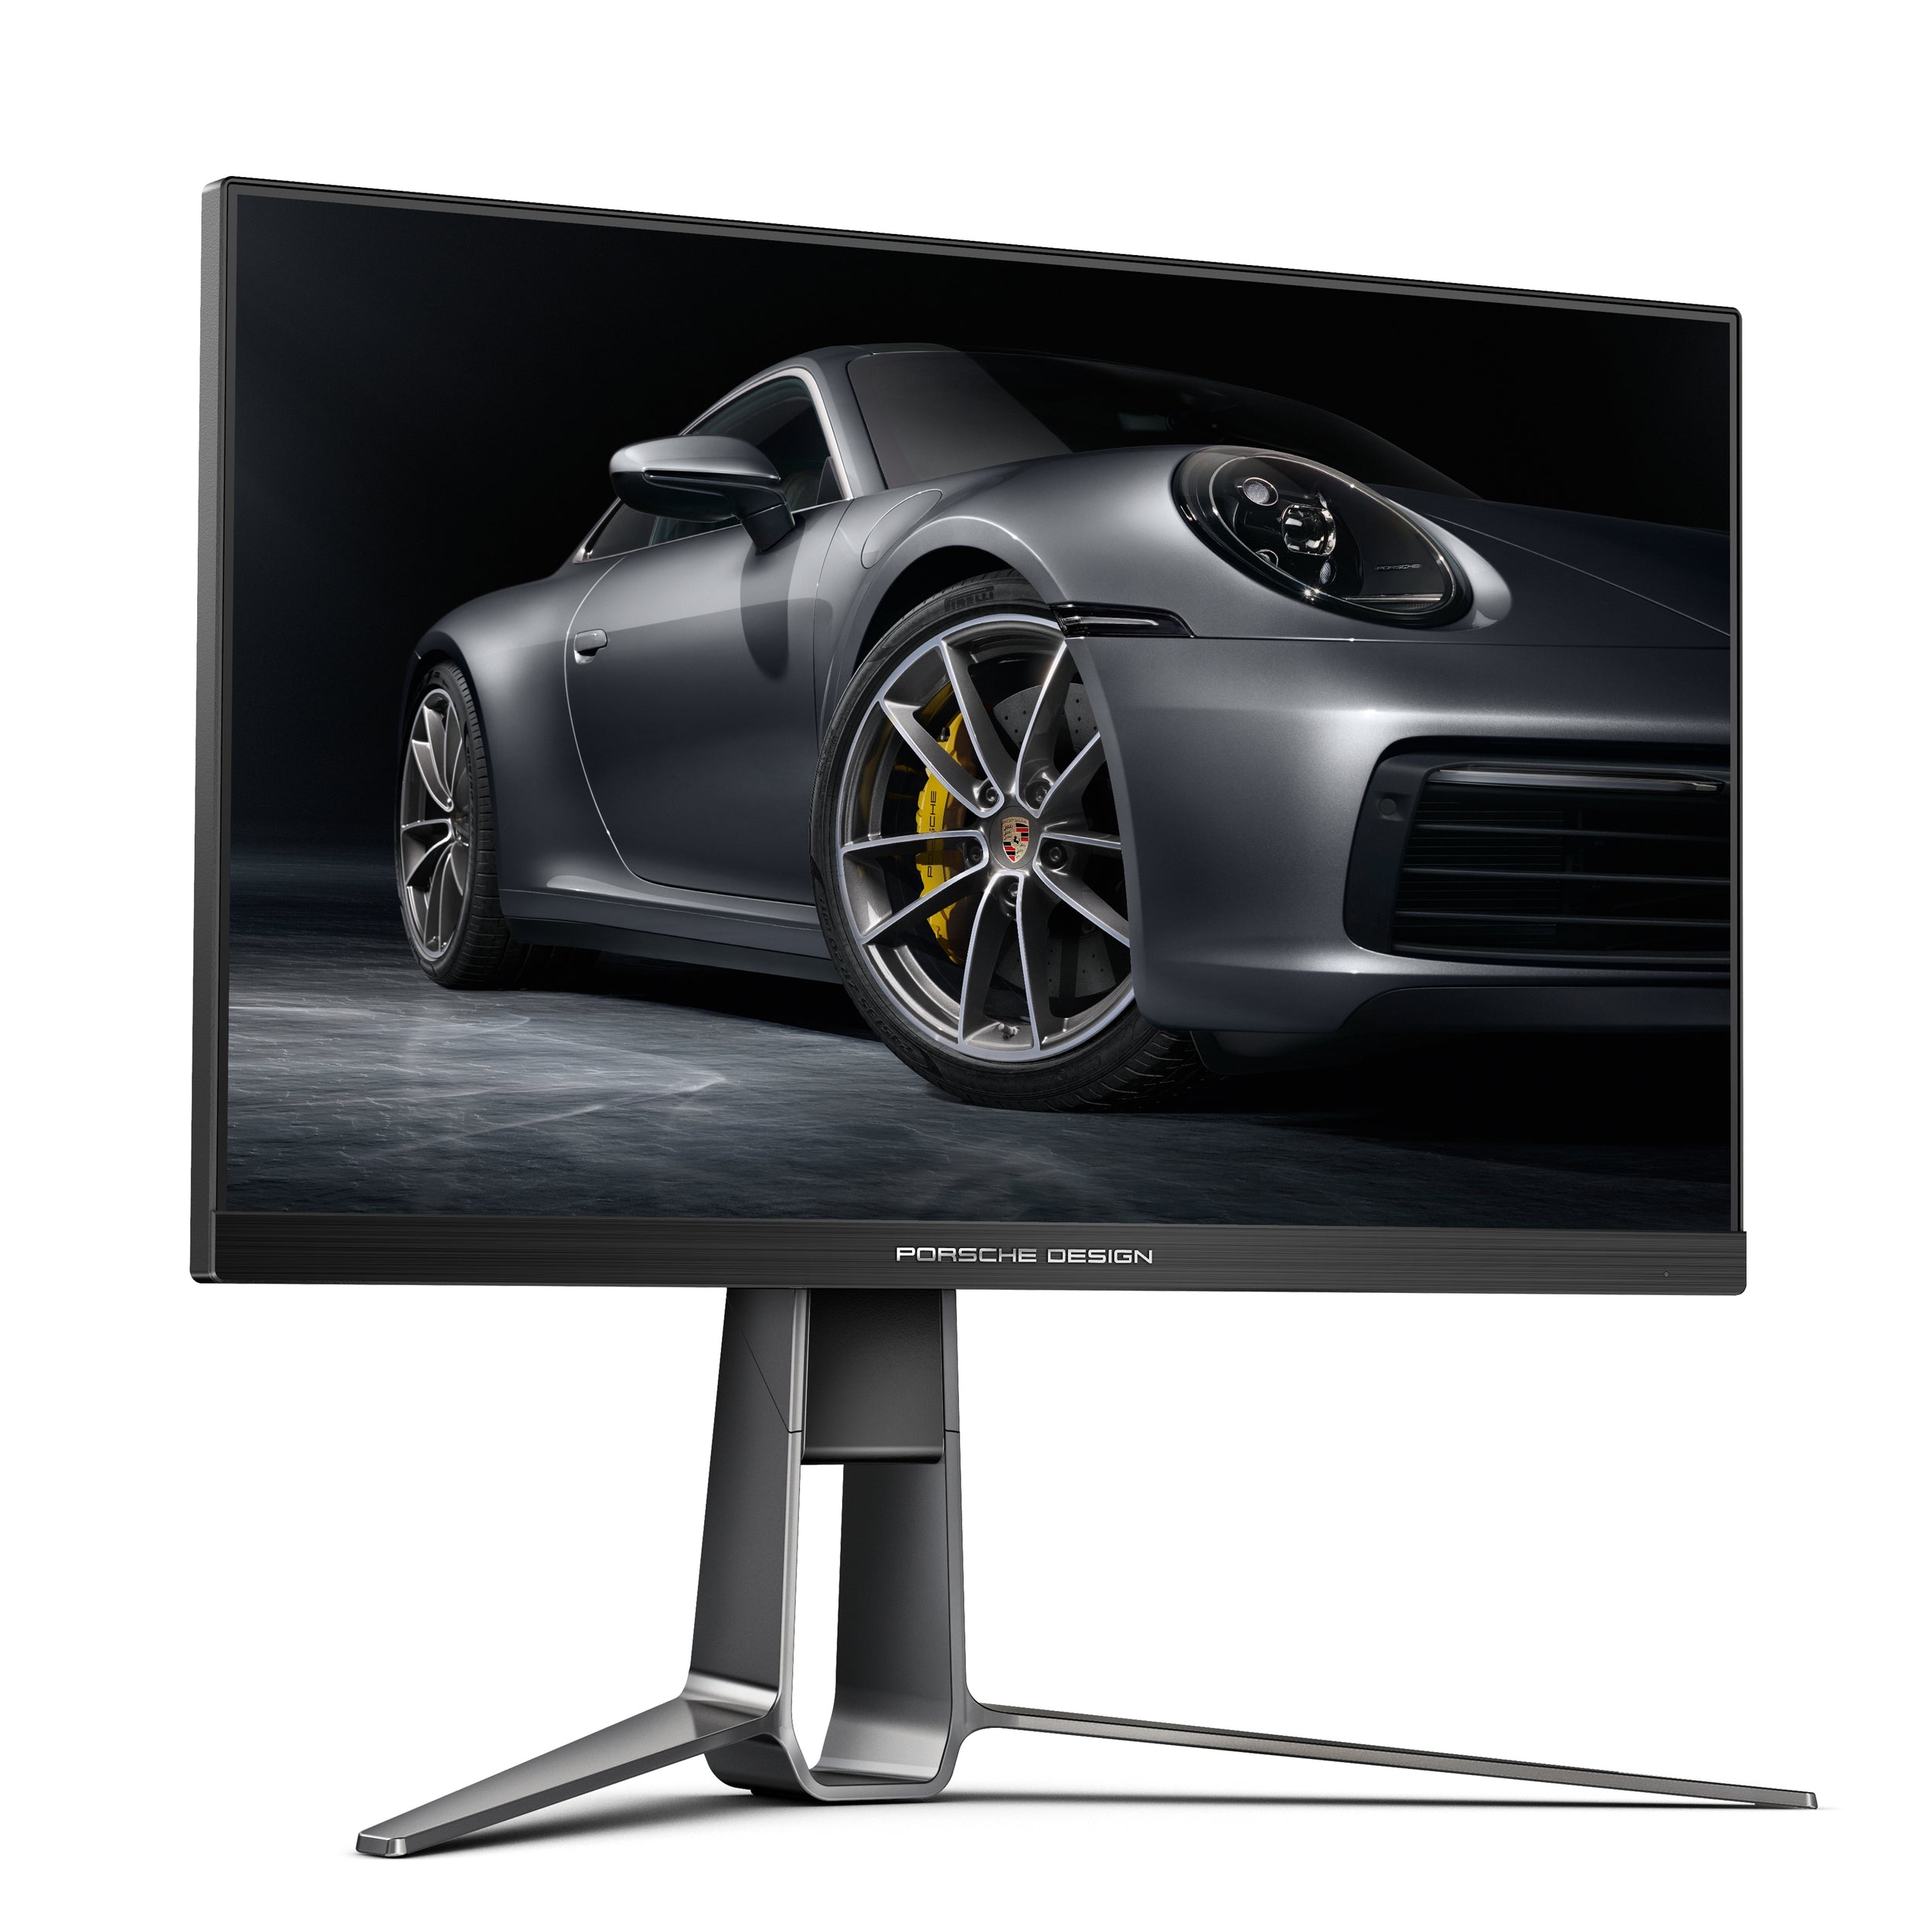 Monitor Aoc Porsche Pd27S / Panel Ips  27 / Frecuencia 170 Hz / Tiempo De Respuesta 1 Ms / Amd Free Sync / Color Negro / Hdmi / Displayport / Aspecto 16:9 / Resolucion 2560 X 1440 / Brillo 350 Cd/M2